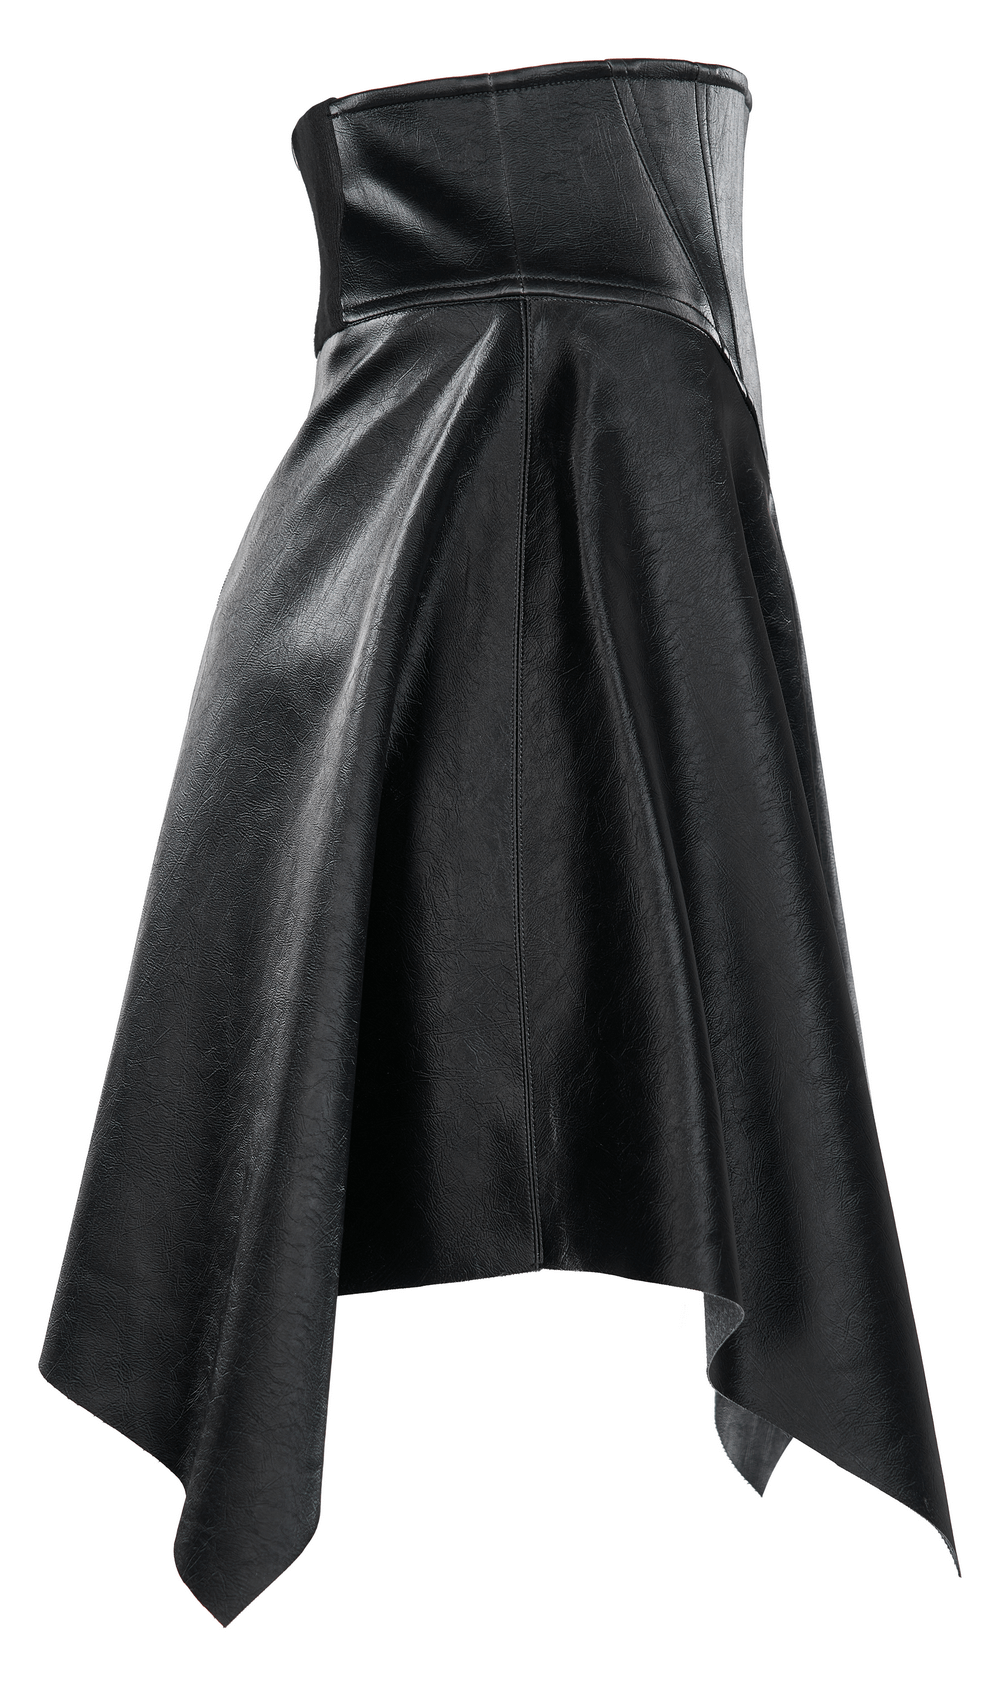 Punk Rave Black Faux Leather Mini Skirt / High Waist Seal Square Hem